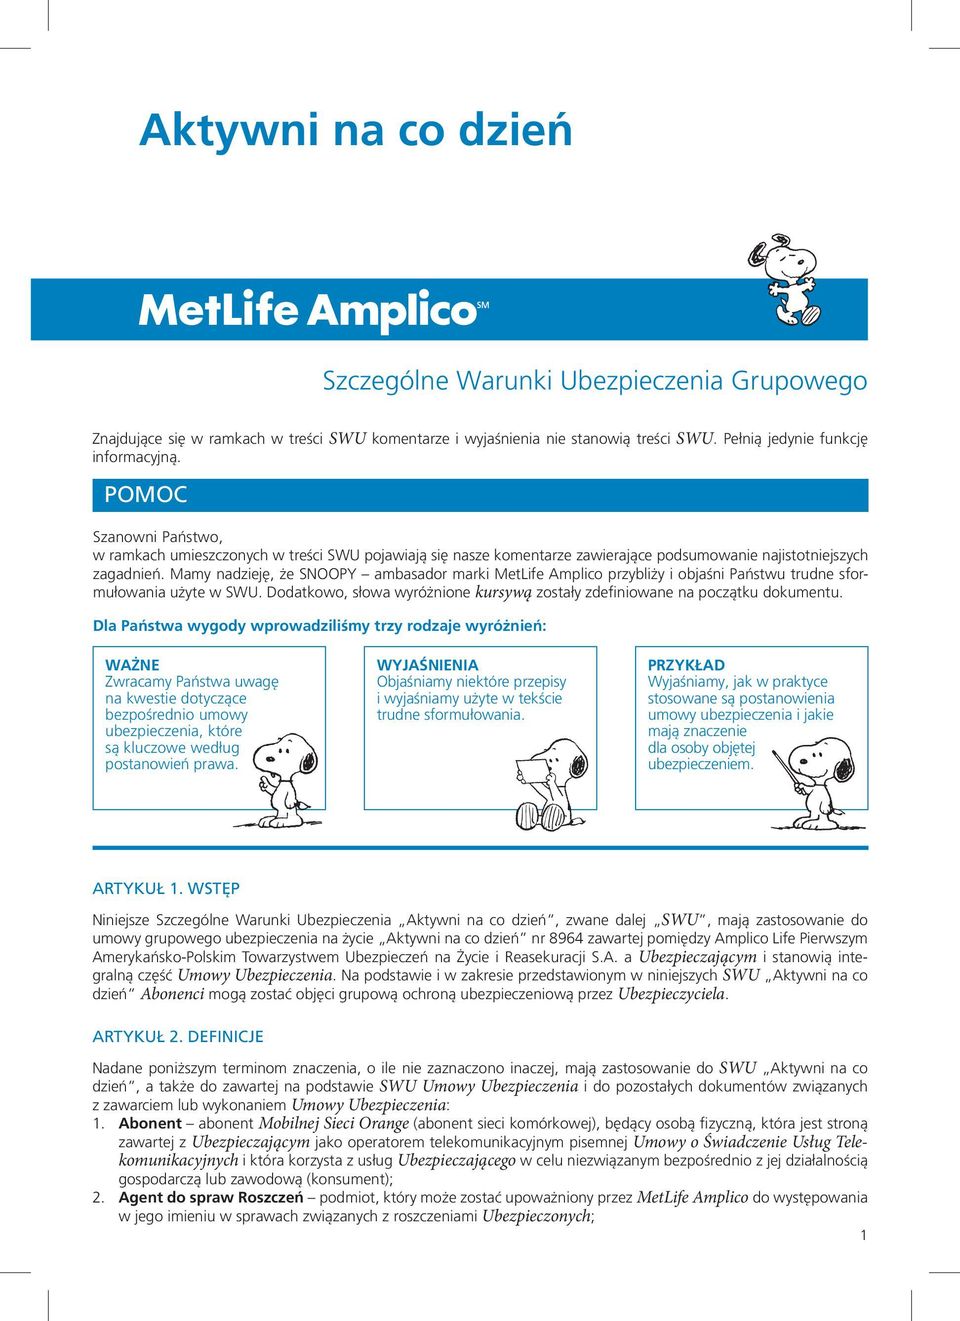 Mamy nadzieję, że SNOOPY ambasador marki MetLife Amplico przybliży i objaśni Państwu trudne sformułowania użyte w SWU. Dodatkowo, słowa wyróżnione kursywą zostały zdefiniowane na początku dokumentu.